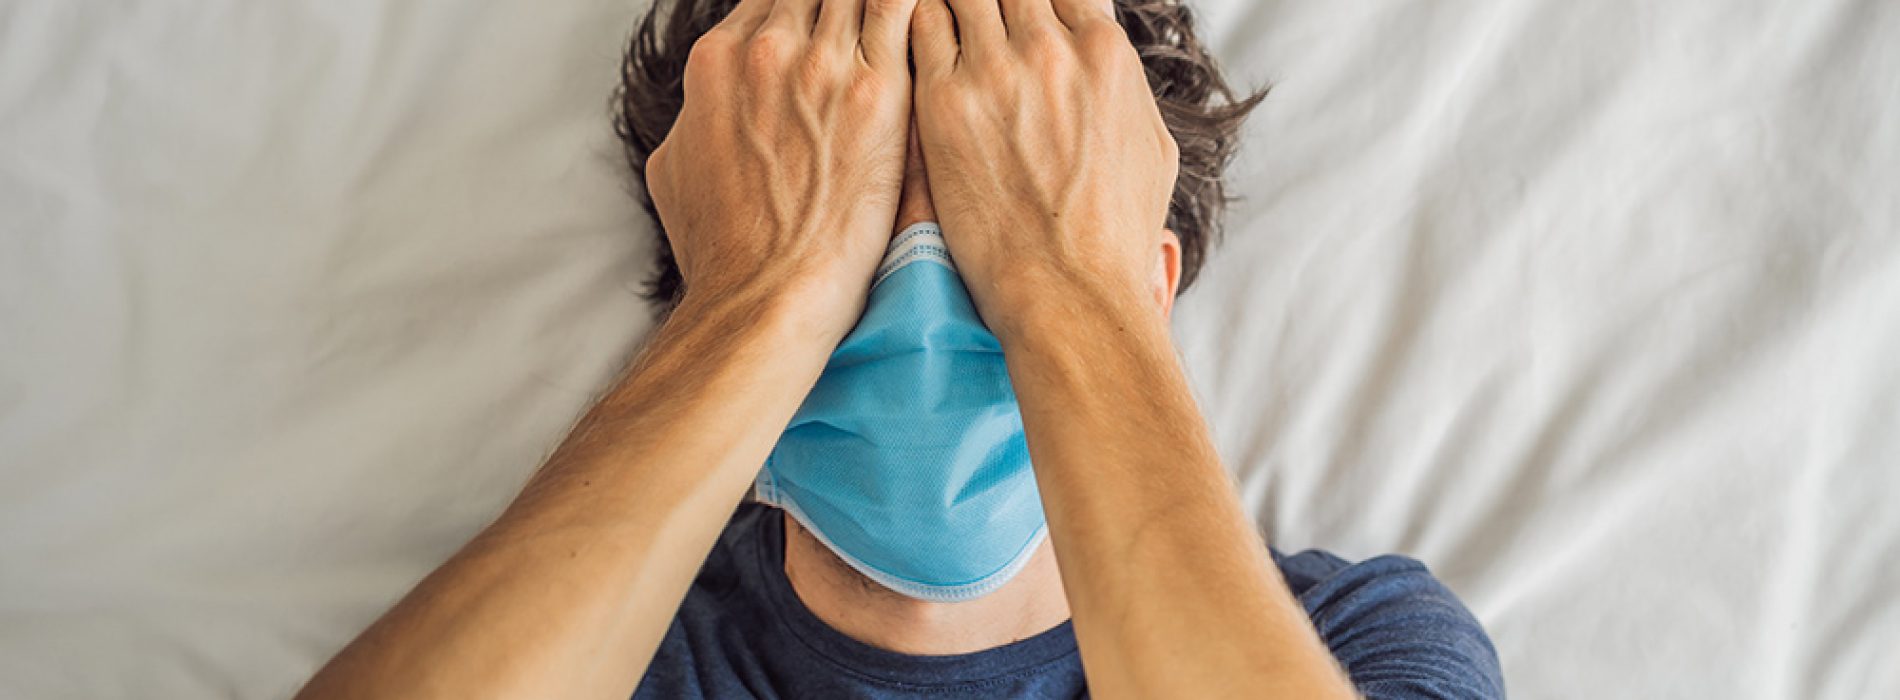 Mondmasker veroorzaakt tandvleesaandoeningen, waardoor het risico op overlijden door het coronavirus met 900% toeneemt